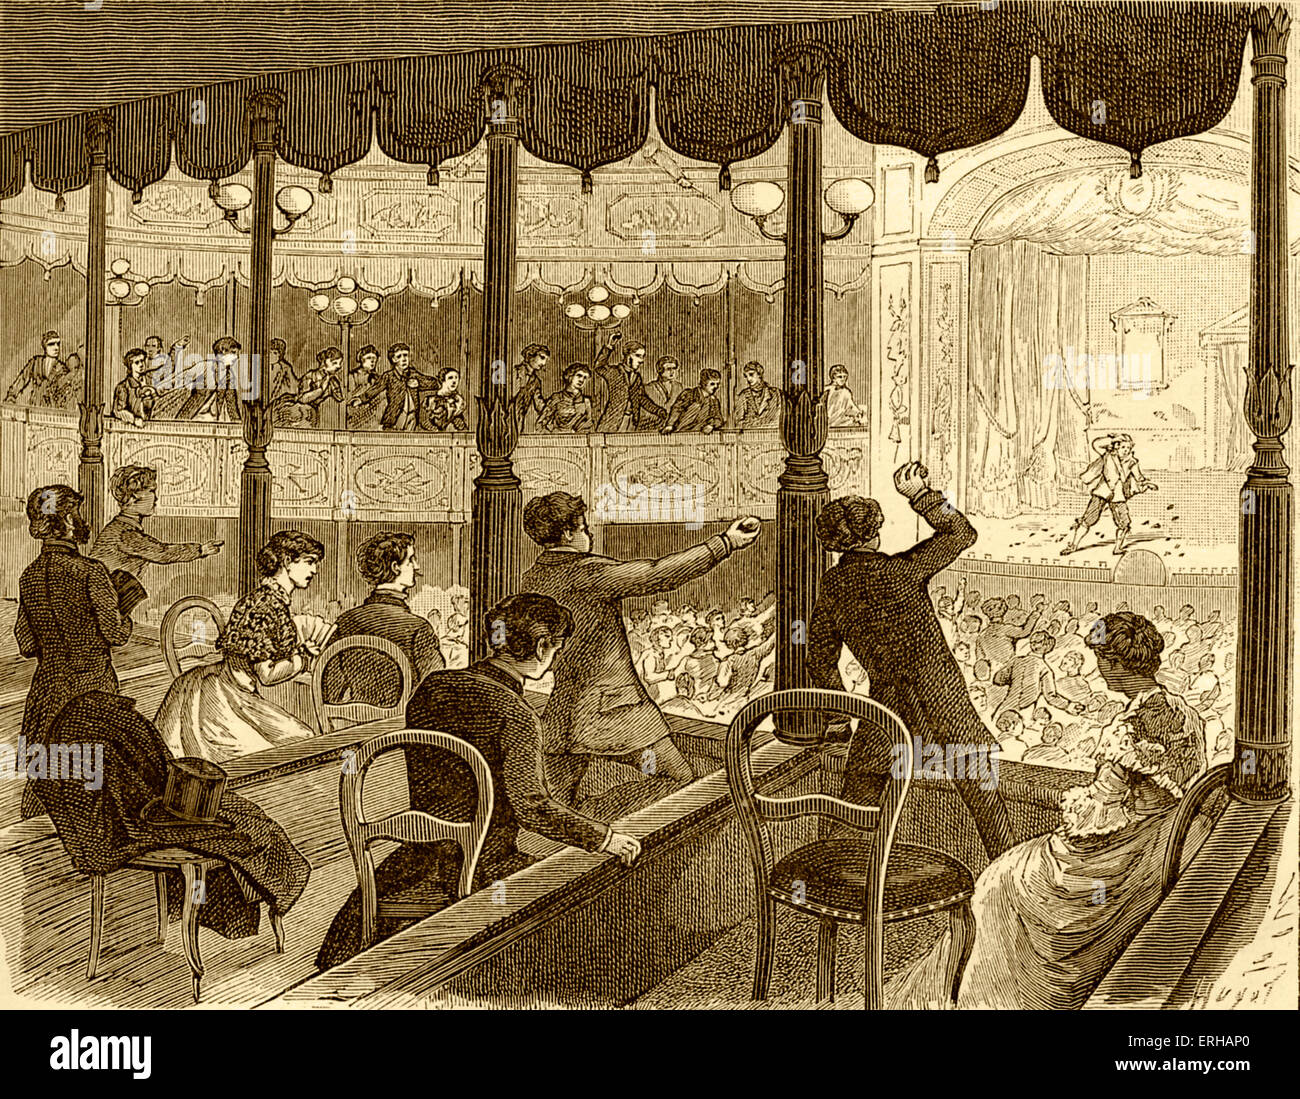 Jeter les pommes cuites à l'auditoire - acteur caricature (gravure), publié en 1885. Commentaires sur l'heure de la tradition française de jeter Banque D'Images